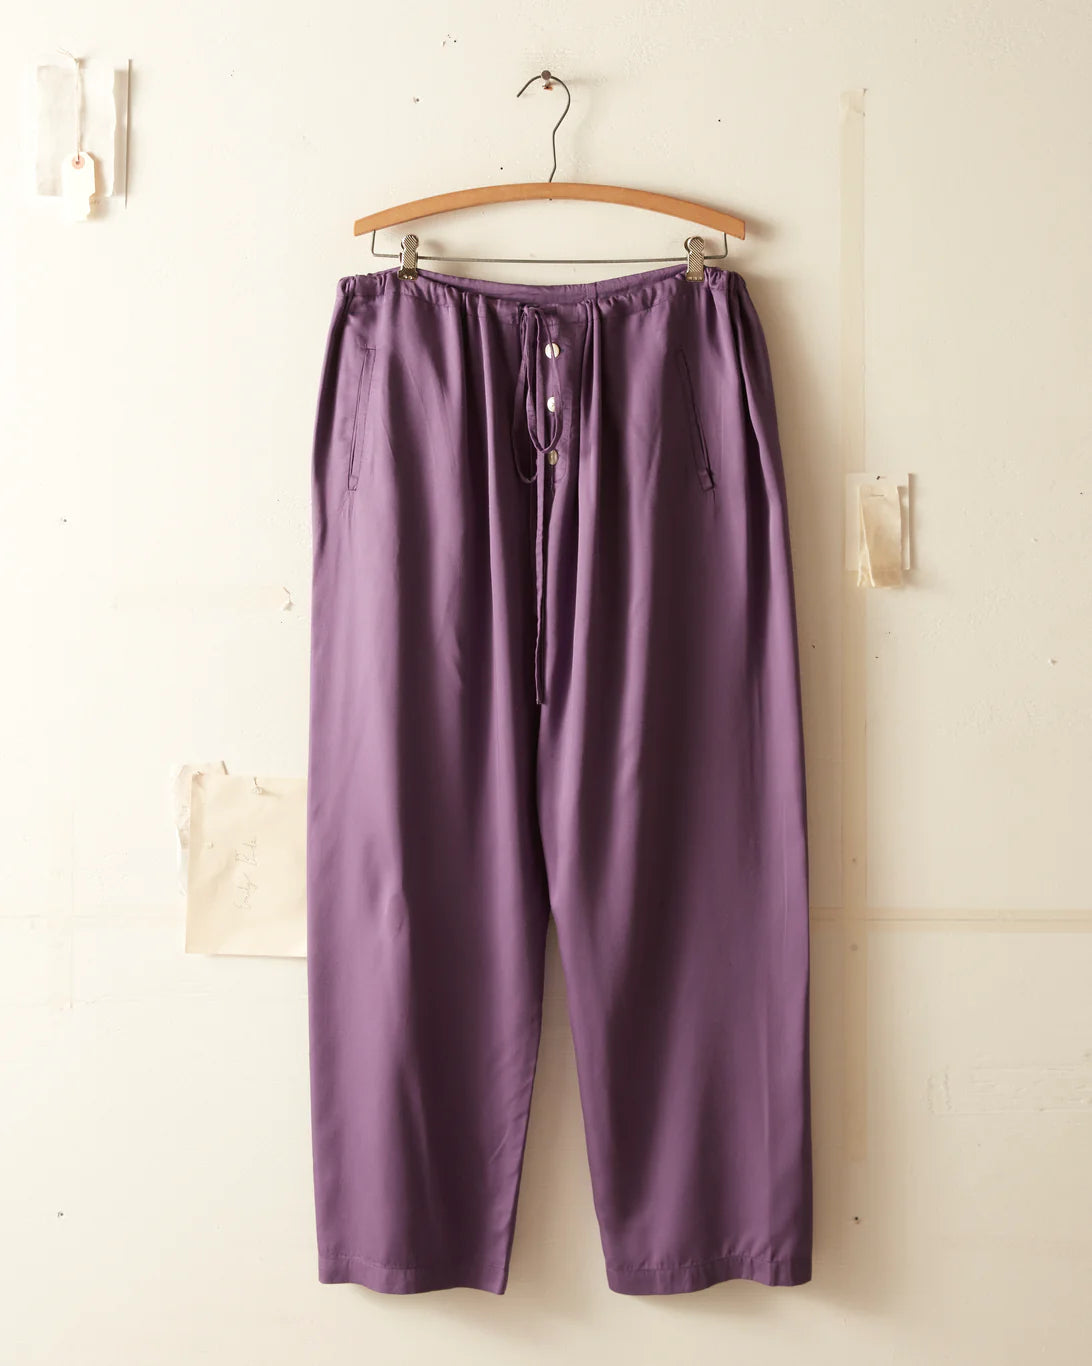 pajama pants small purple - Gem